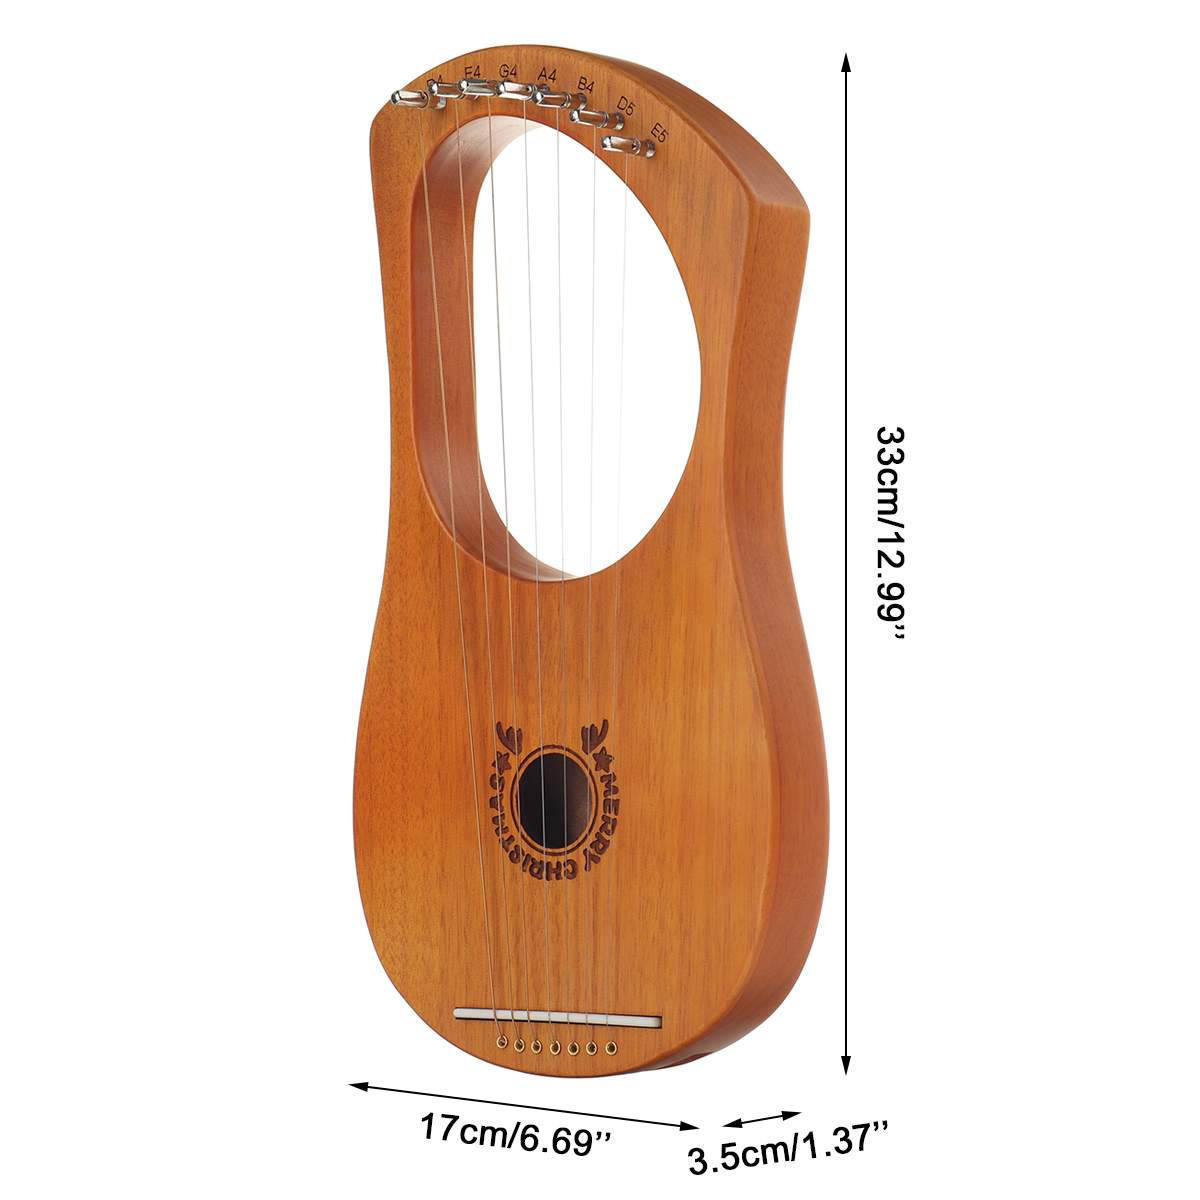 Træ mahogni 7 -strenget lyre harpe strenge musikinstrument med pickup tuning hammer rengøringsklud harpe instrument